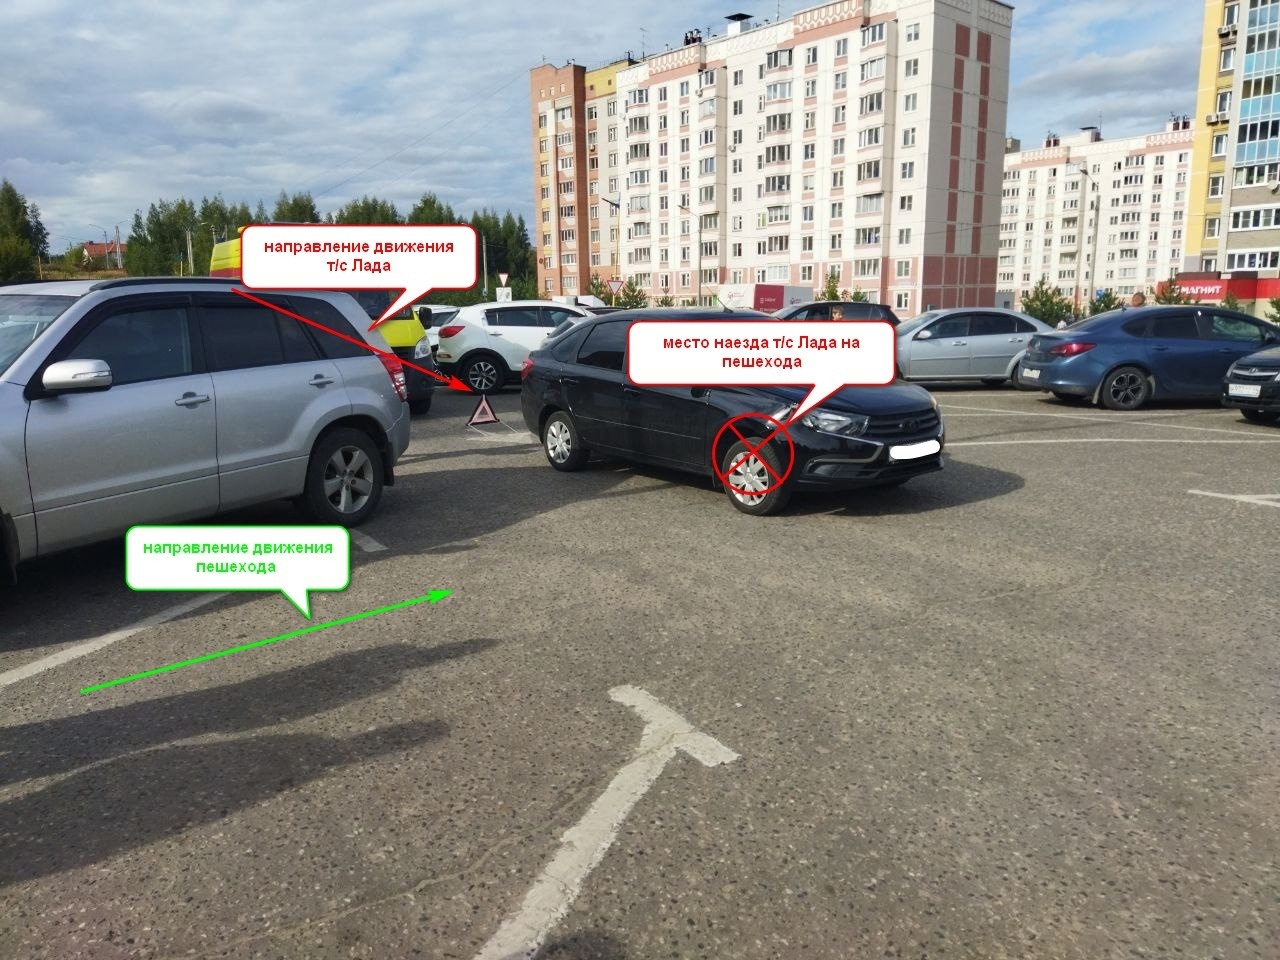 Автоледи сбила ребенка в Костроме